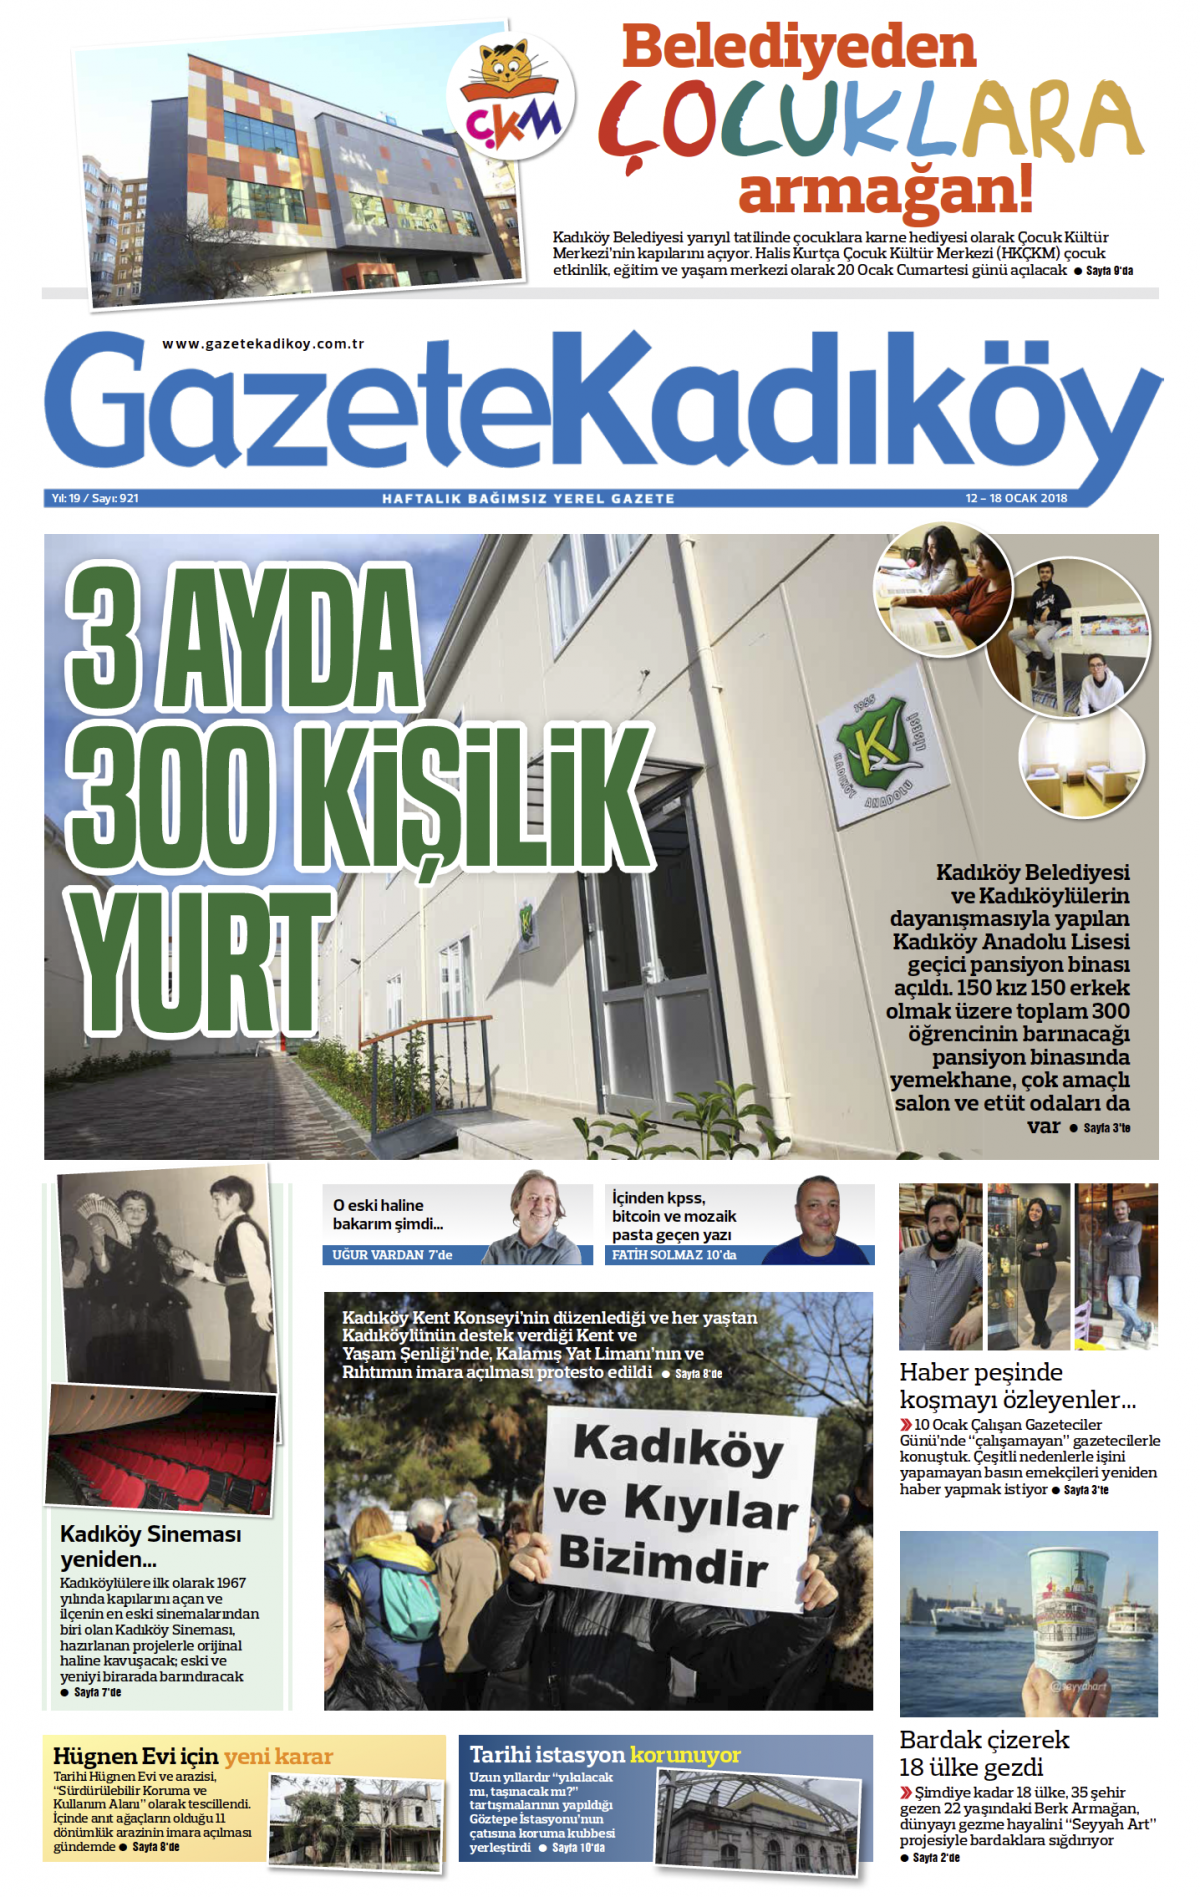 Gazete Kadıköy - 921. SAYI